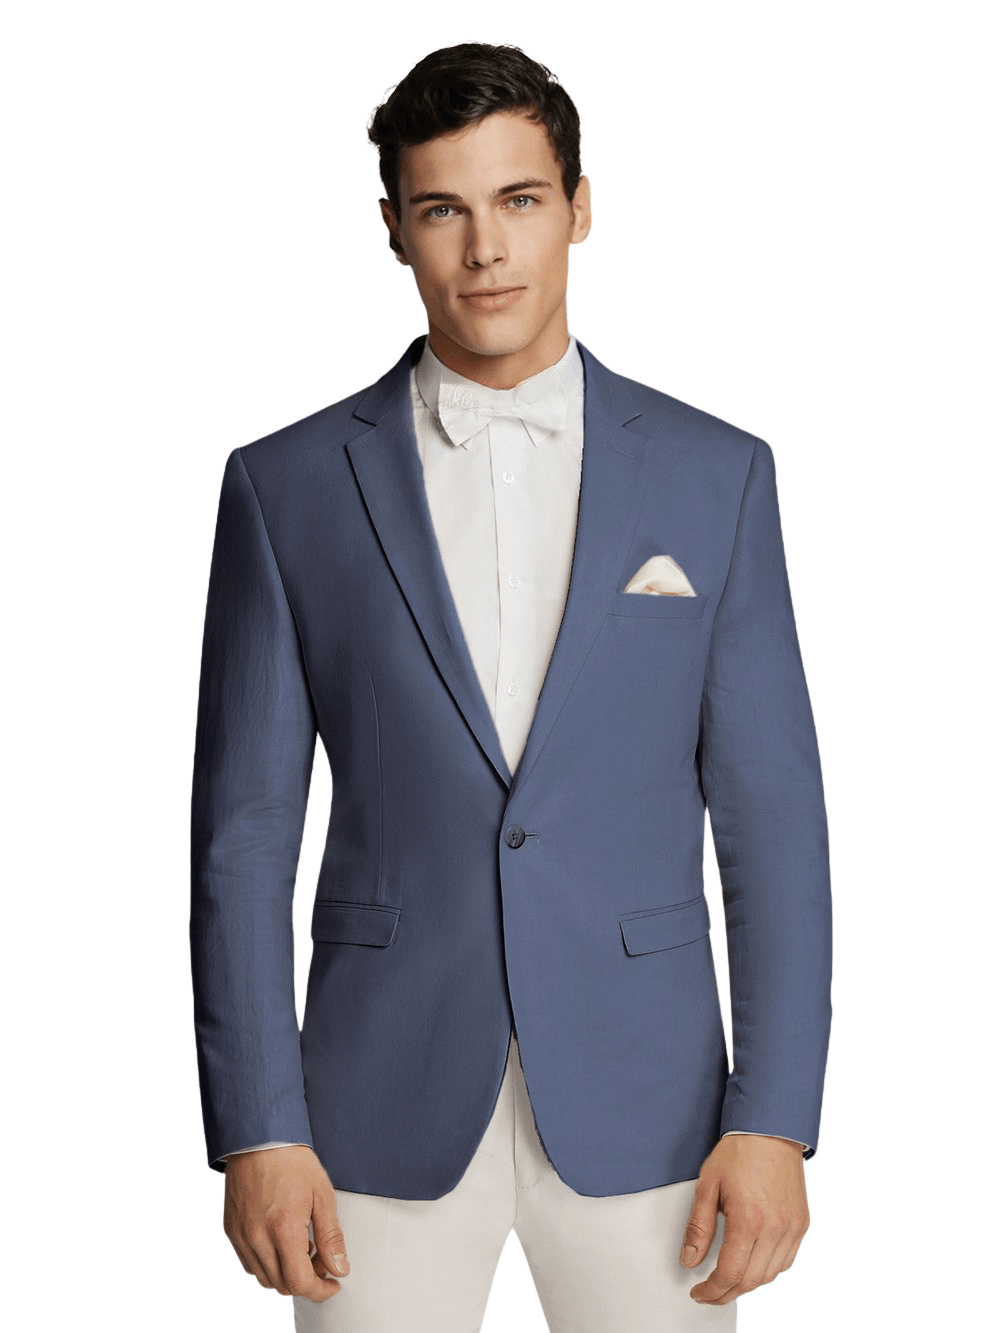 Men's Indigo Linen Sport Jacket Stylish Blazer